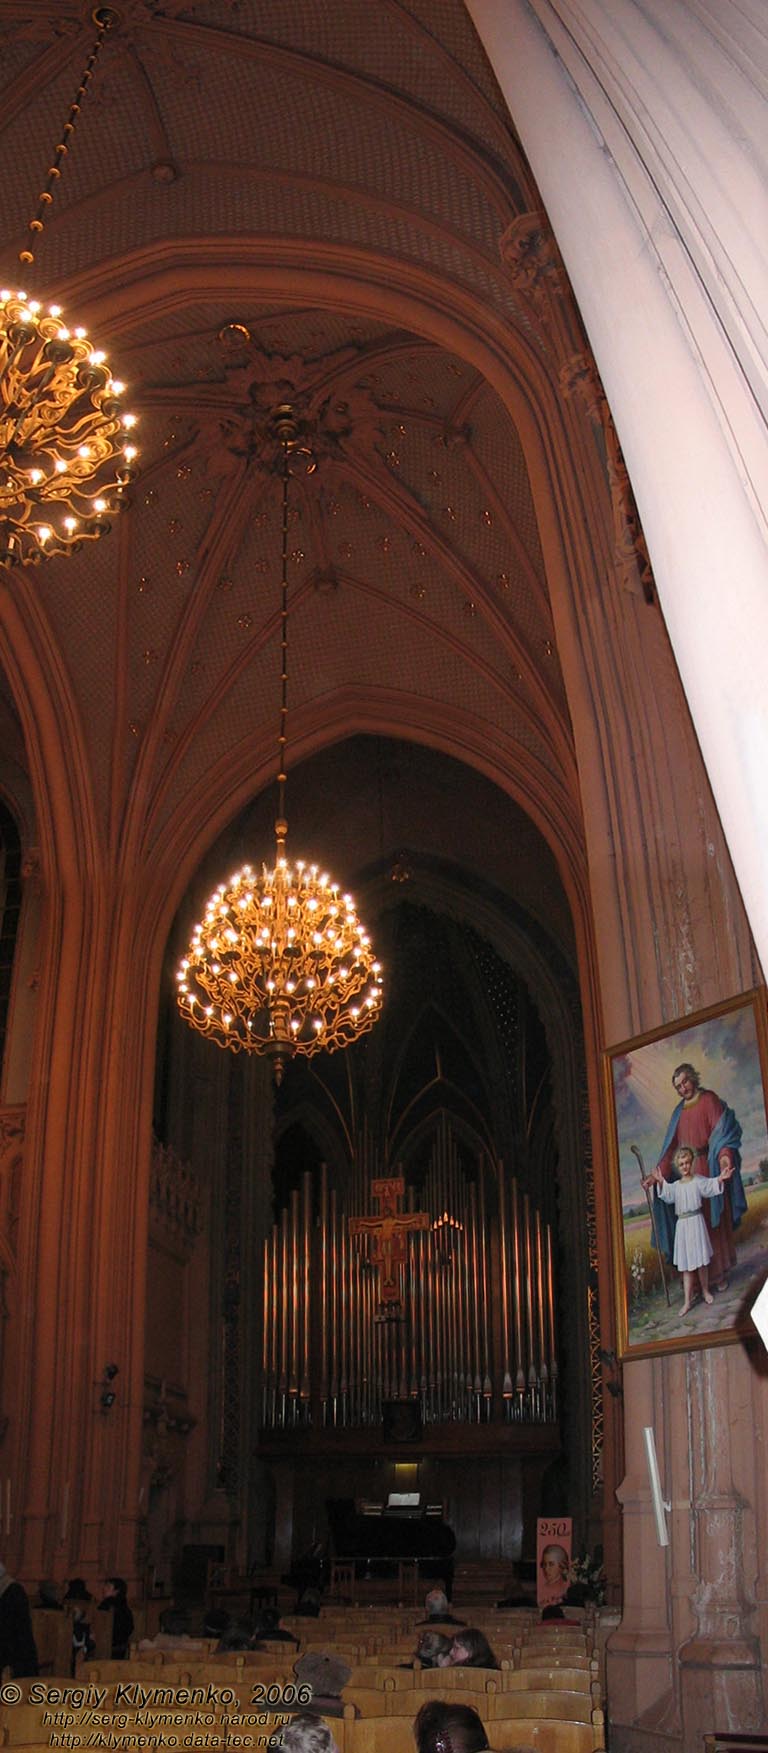 Фото Киева. Большой органный зал Национального дома органной и камерной музыки Украины.